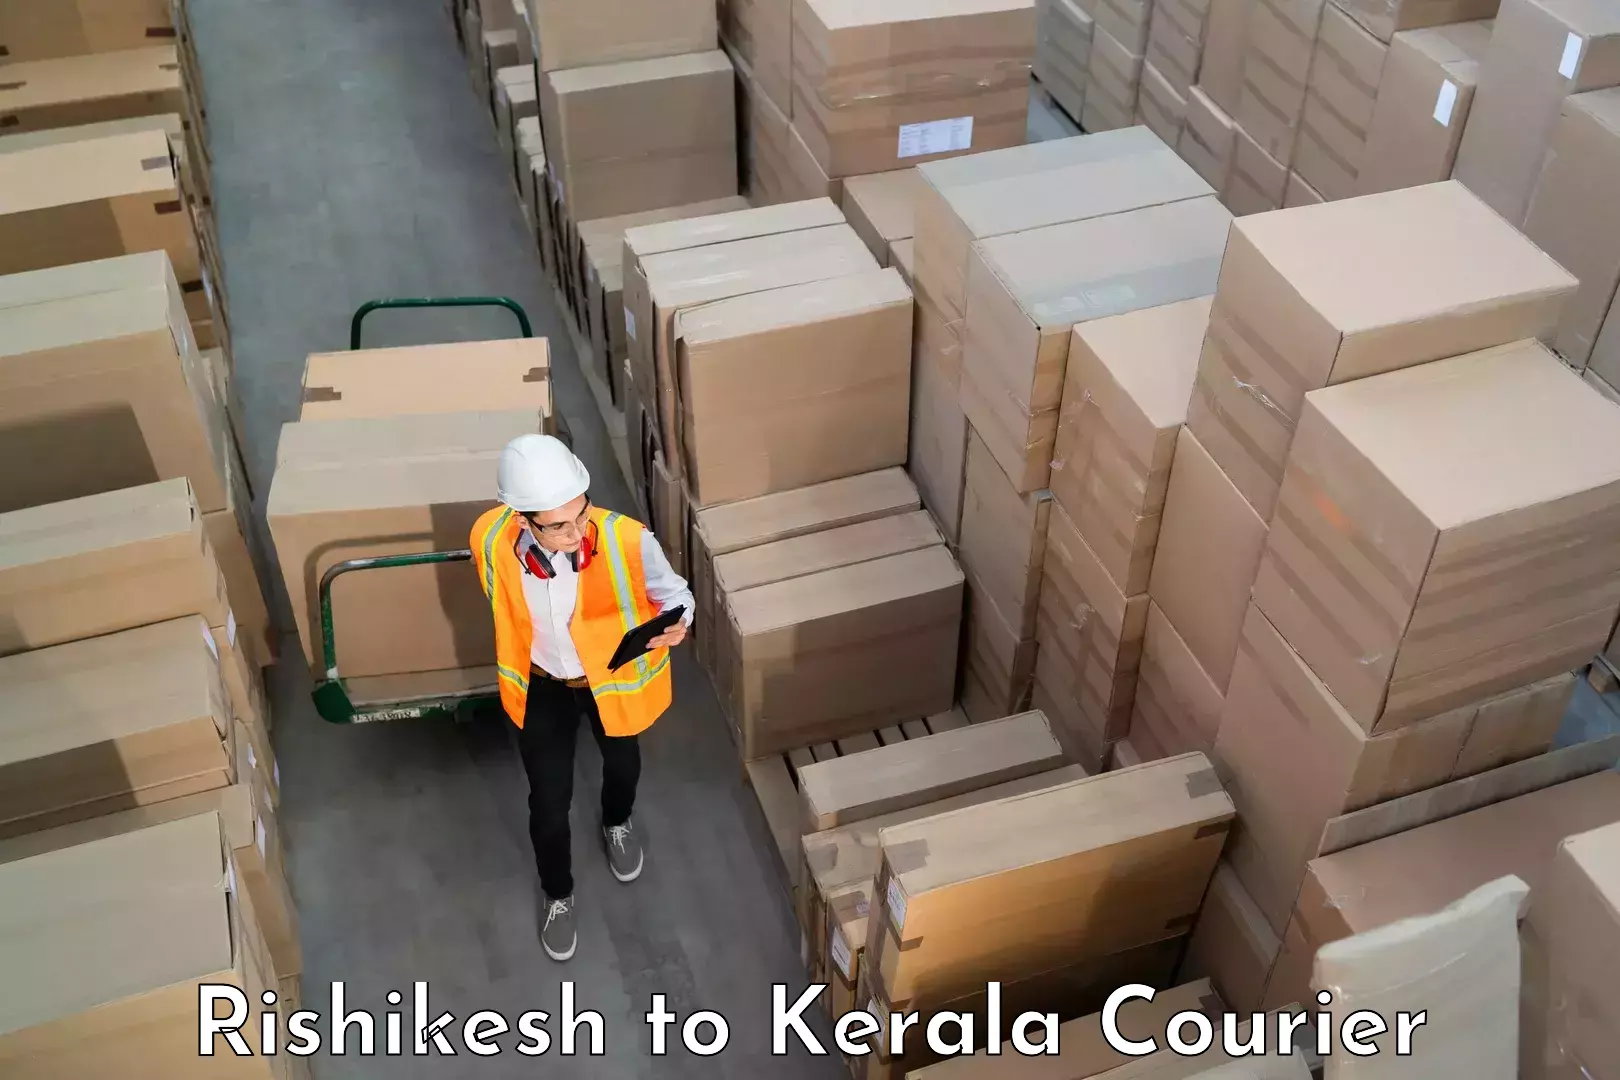 Personal effects shipping in Rishikesh to Kerala